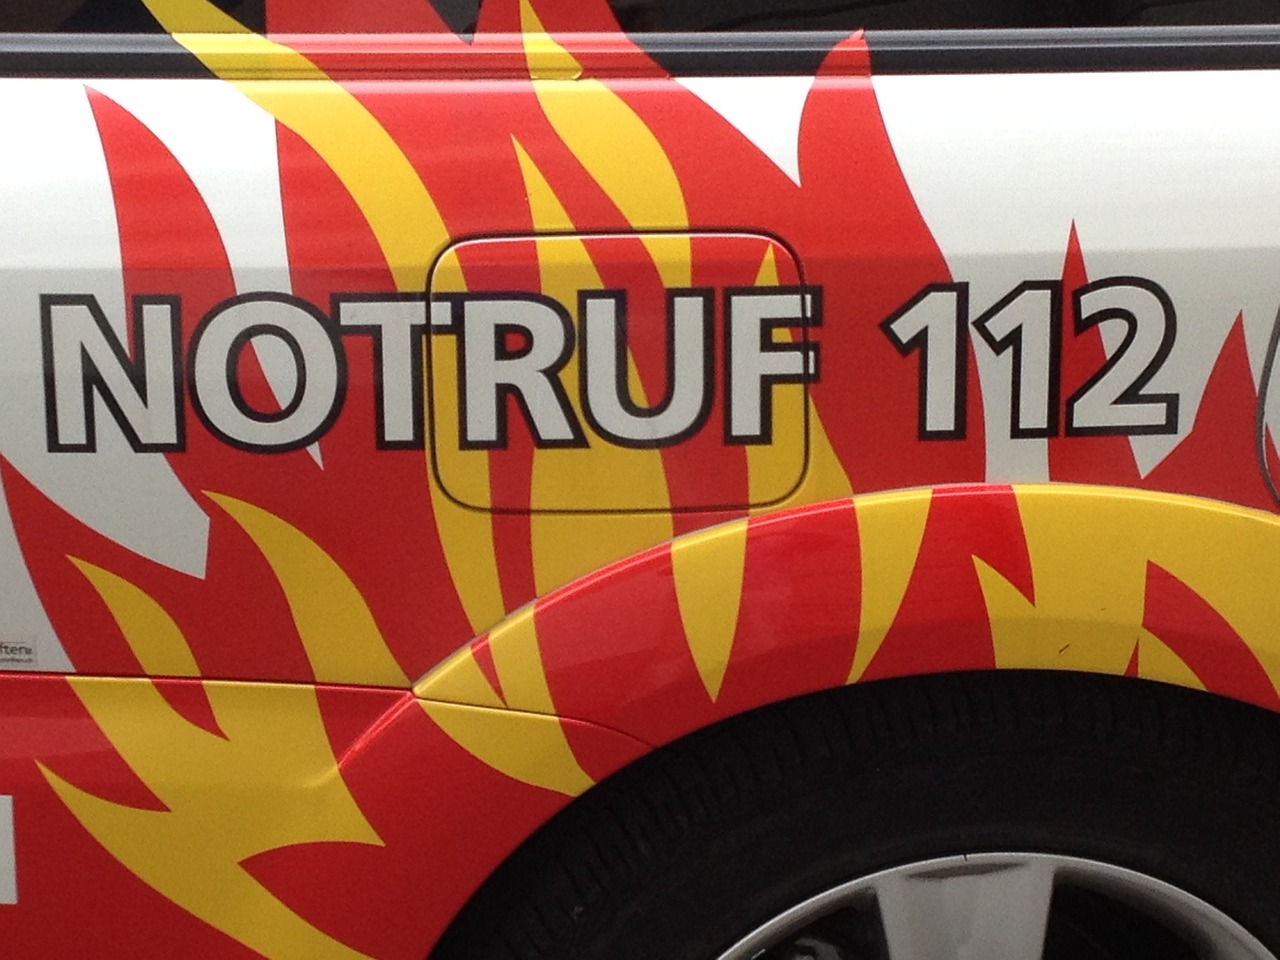 Notruf 112 war ausgefallen: Zahlreiche Feuerwehren wurden alarmiert